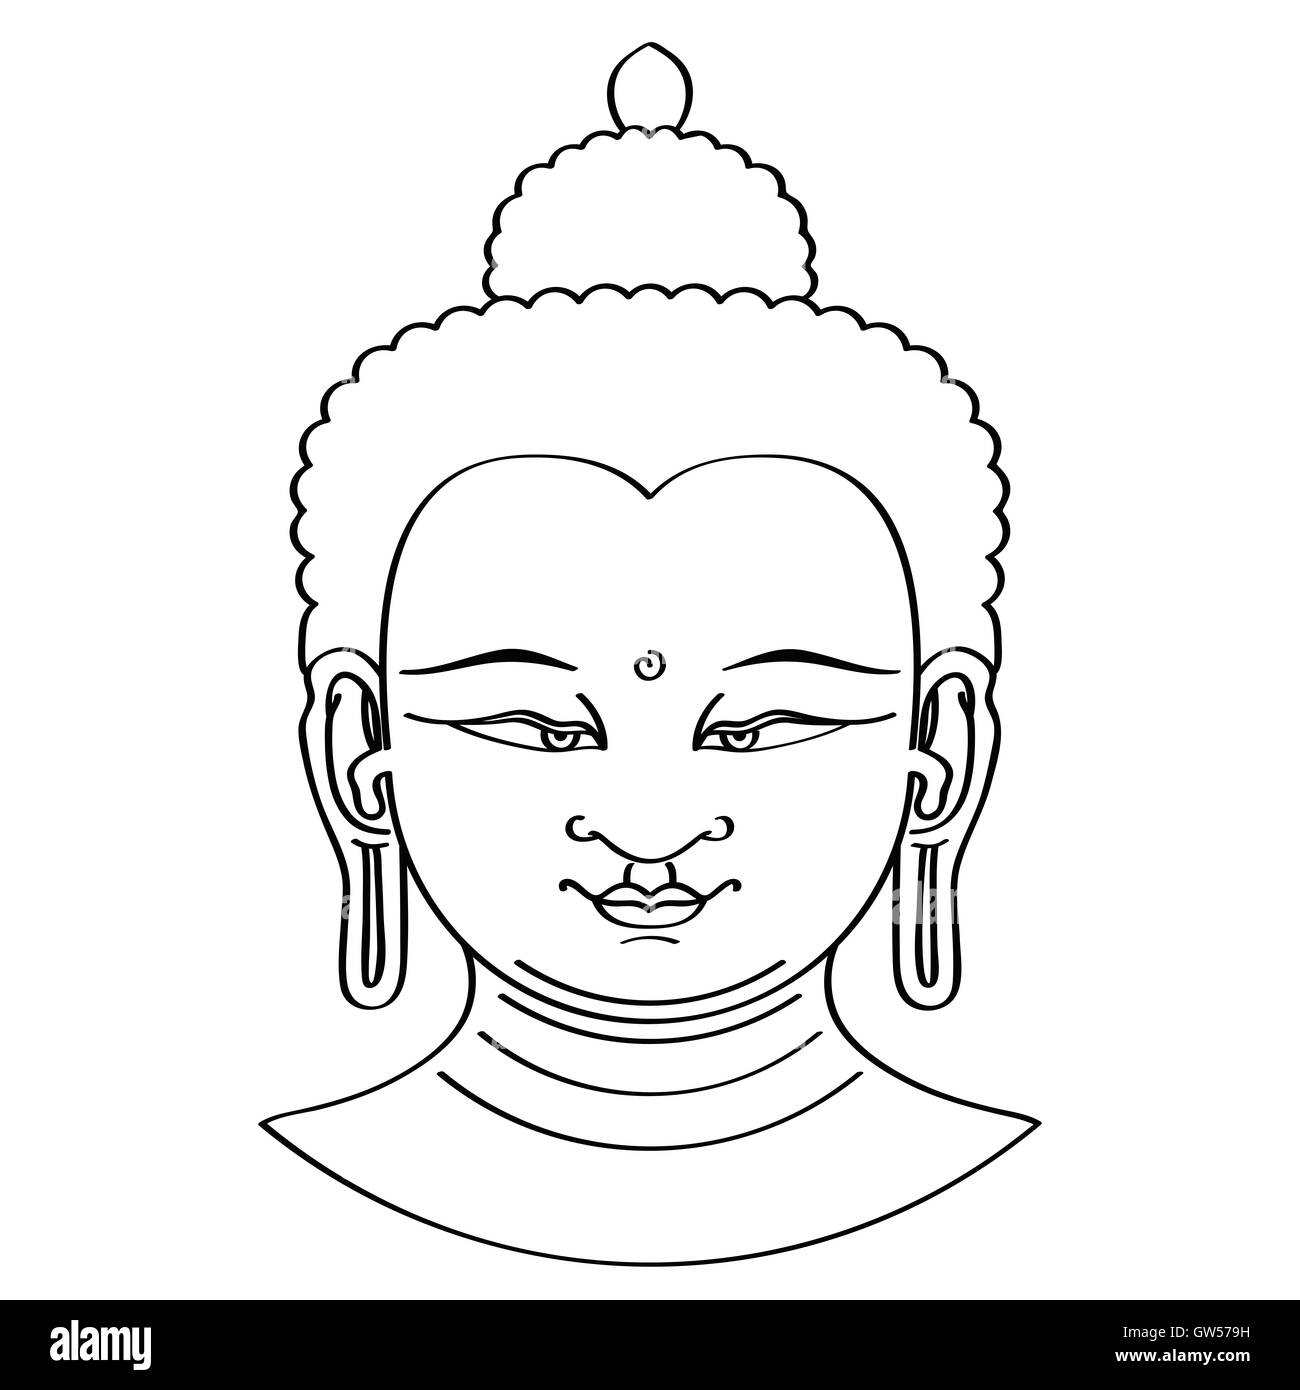 Buddha siddhartha gautama maitreya Black and White Stock Photos ...